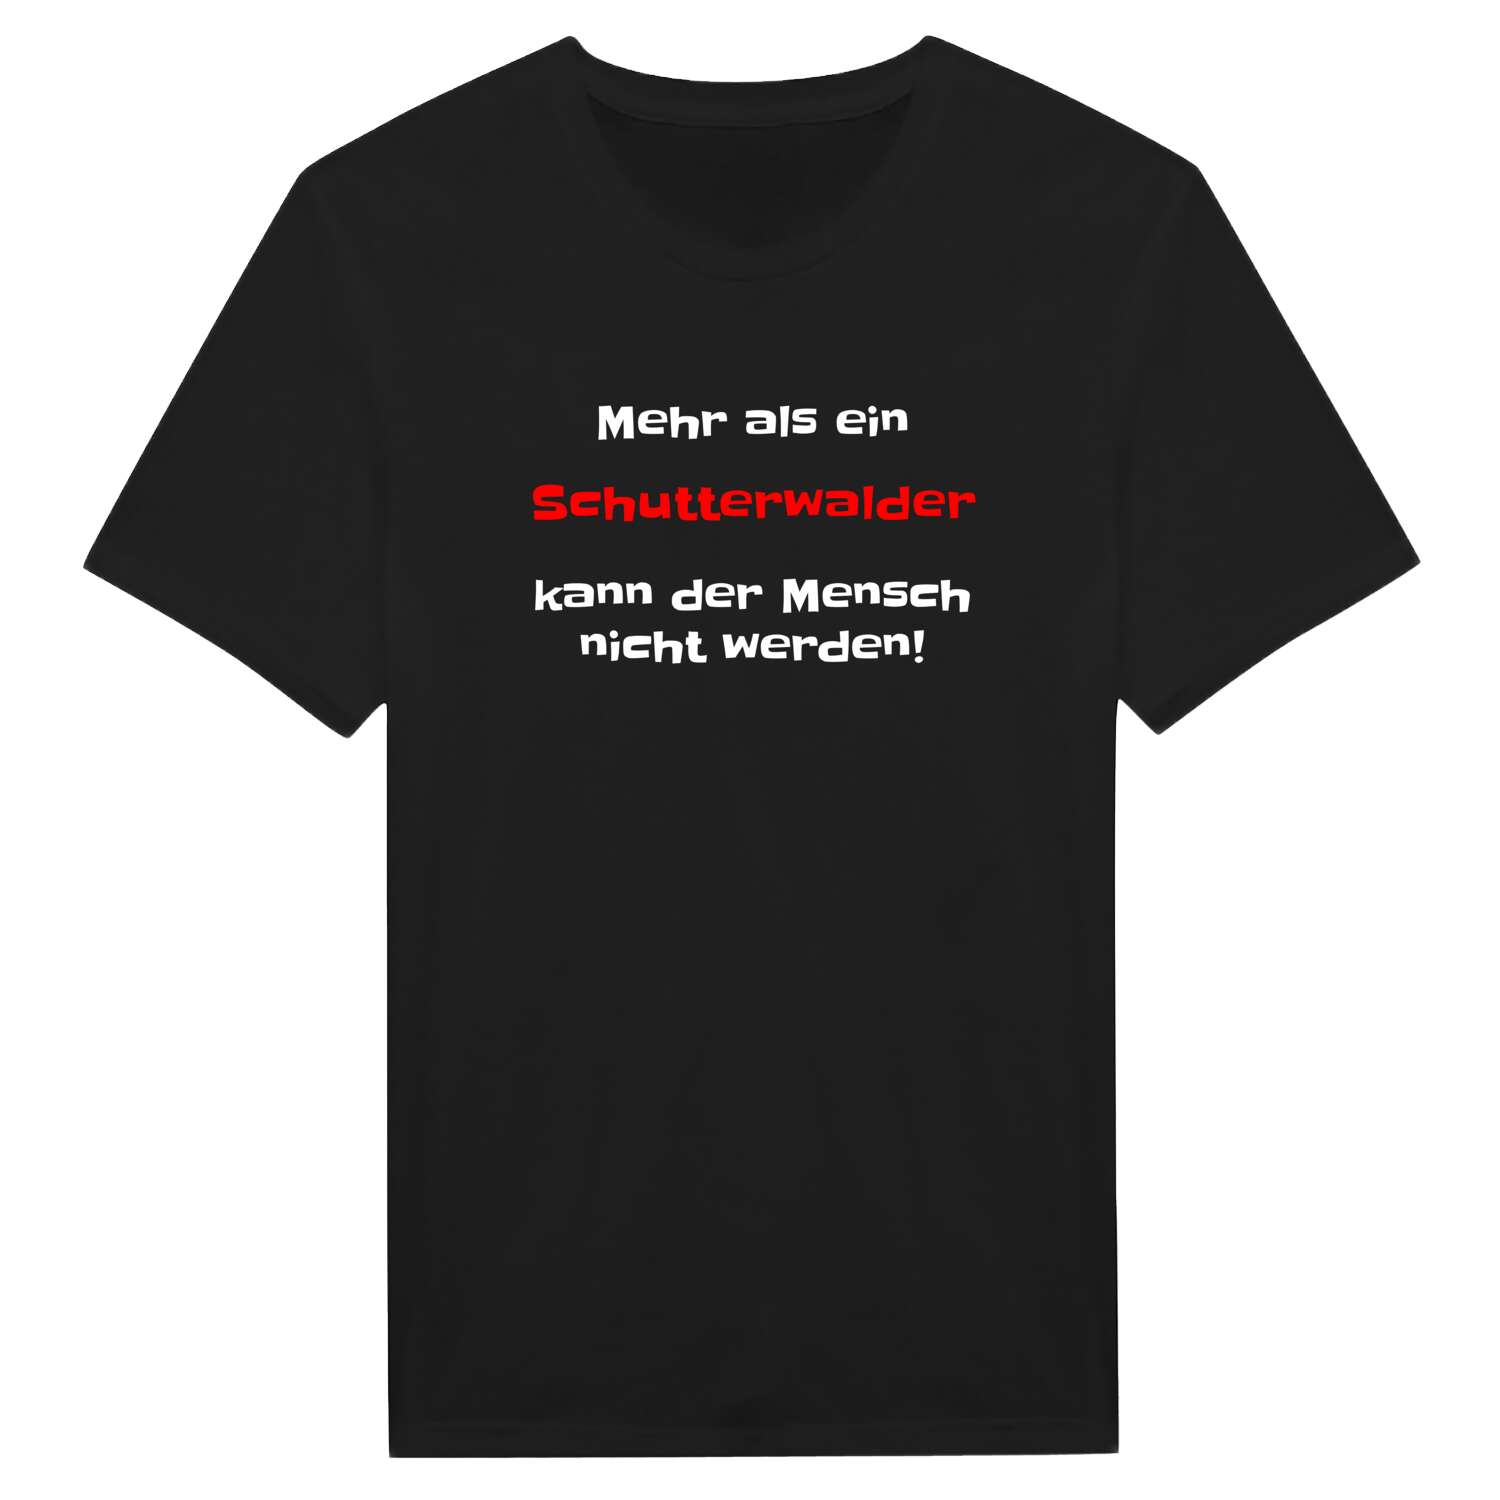 Schutterwald T-Shirt »Mehr als ein«